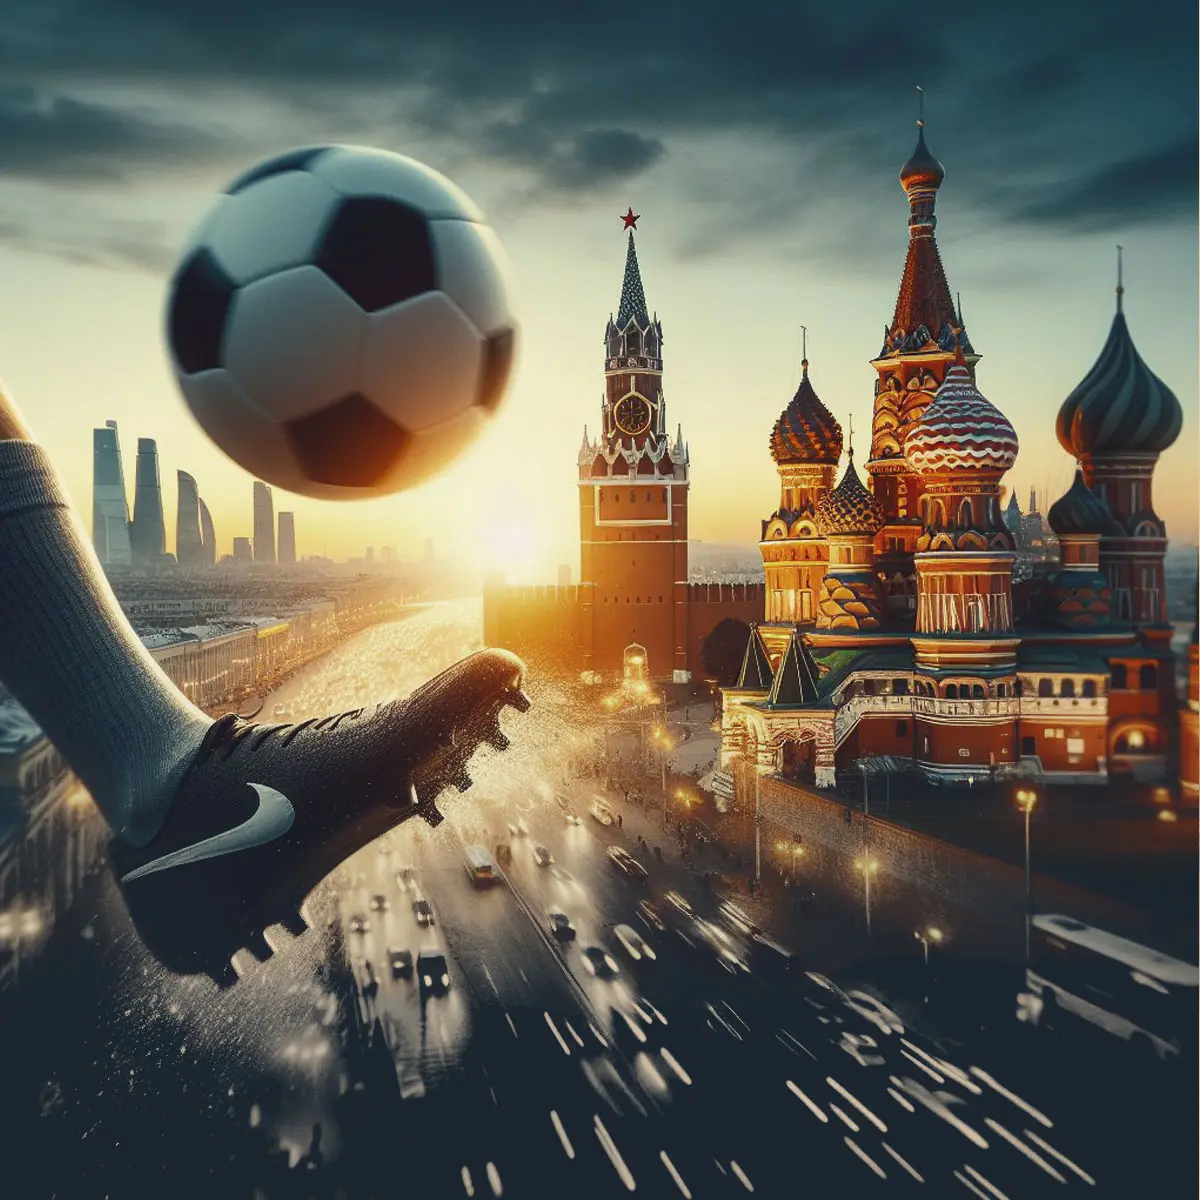 ورزش پرطرفدار فوتبال در روسیه